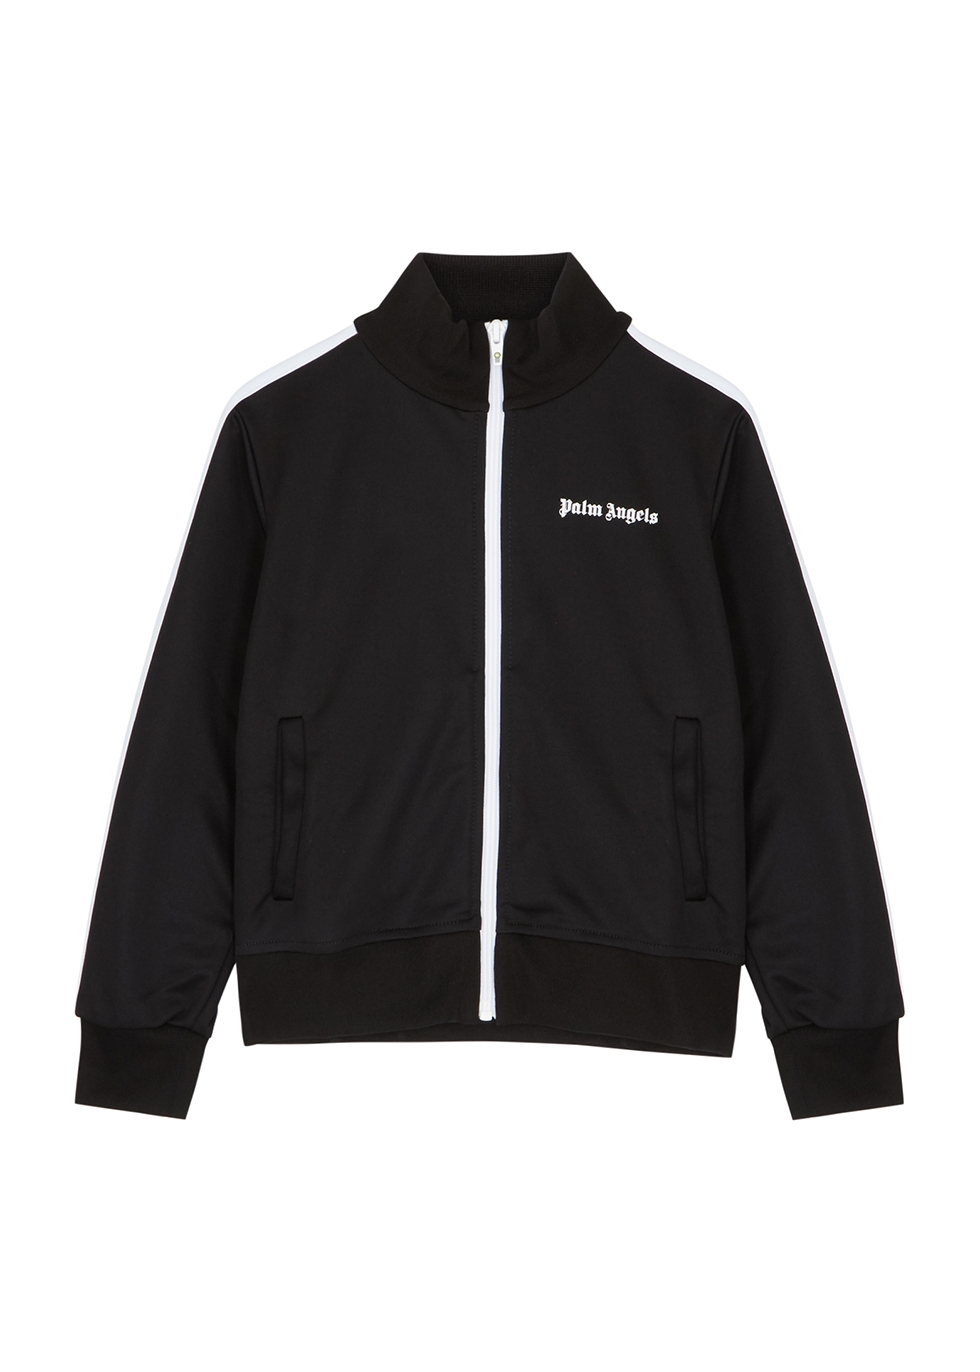 Harvey Nichols Sport & Swimwear Sportswear Sports Jackets KIDS Black hooded softshell jacket 14 years 